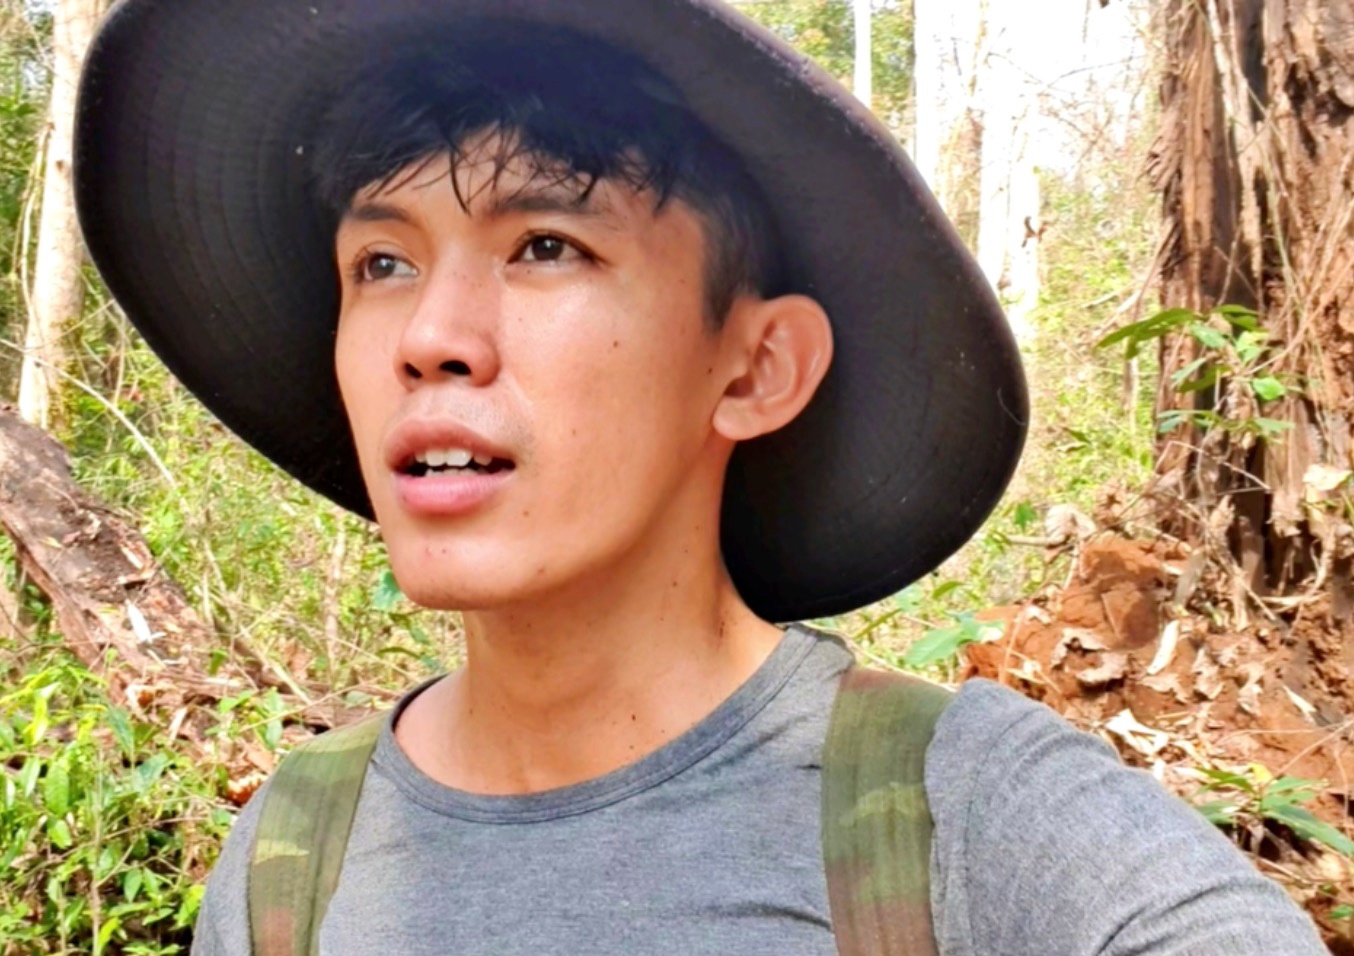 Sang Vlog chia sẻ hình ảnh mới nhất của mình sau chuyến đi vào rừng sâu 2 tuần.